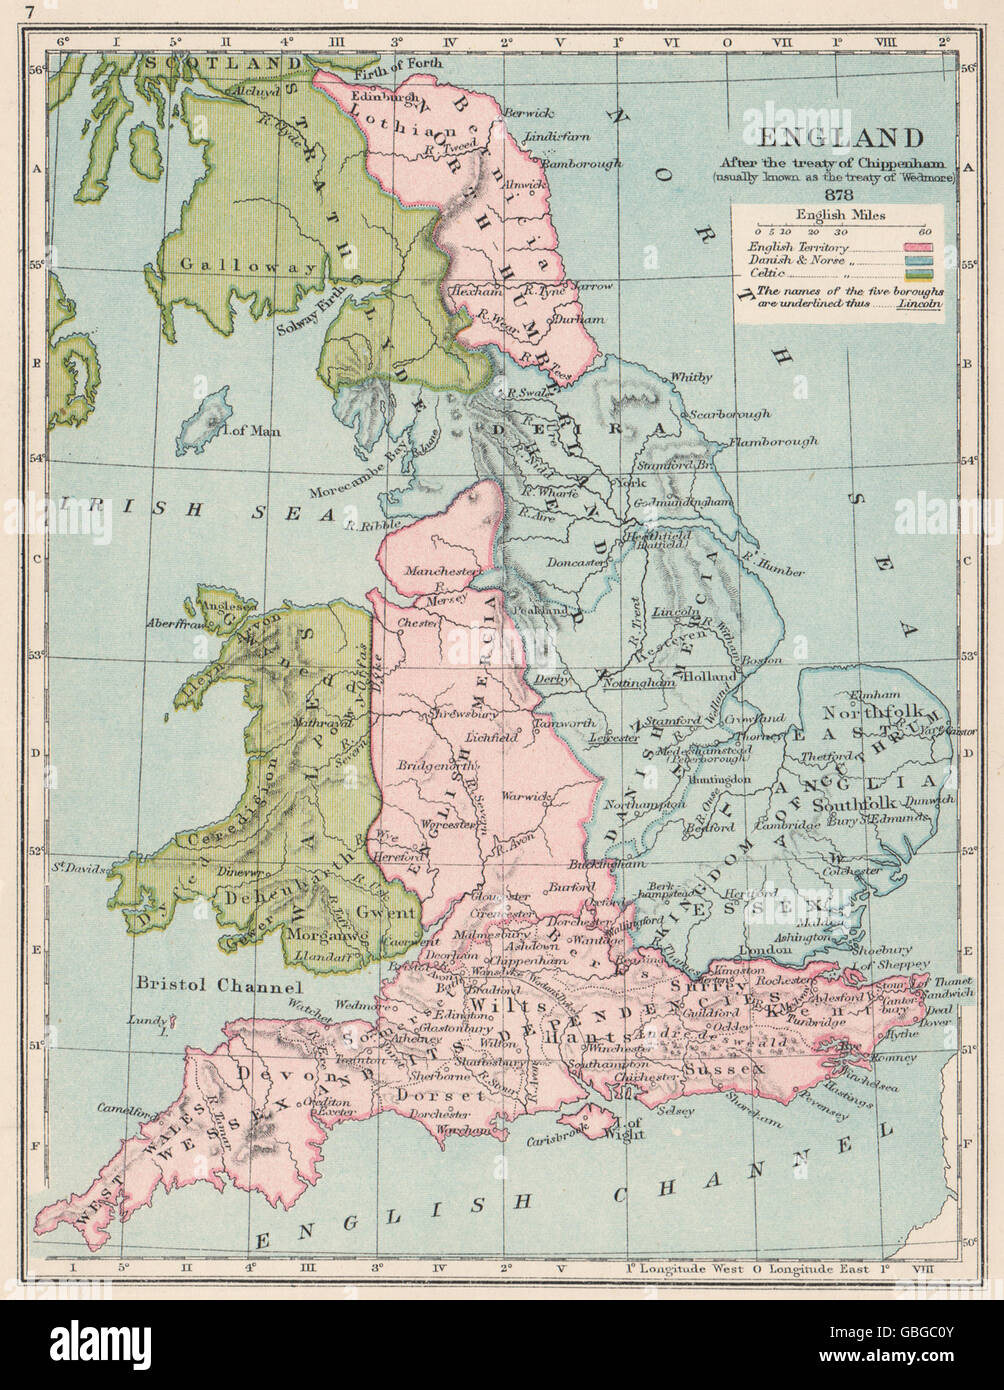 ENGLAND im Jahre 878: Im Vertrag von Chippenham/Wedmore. Norse englische Celtic, 1907 Karte Stockfoto